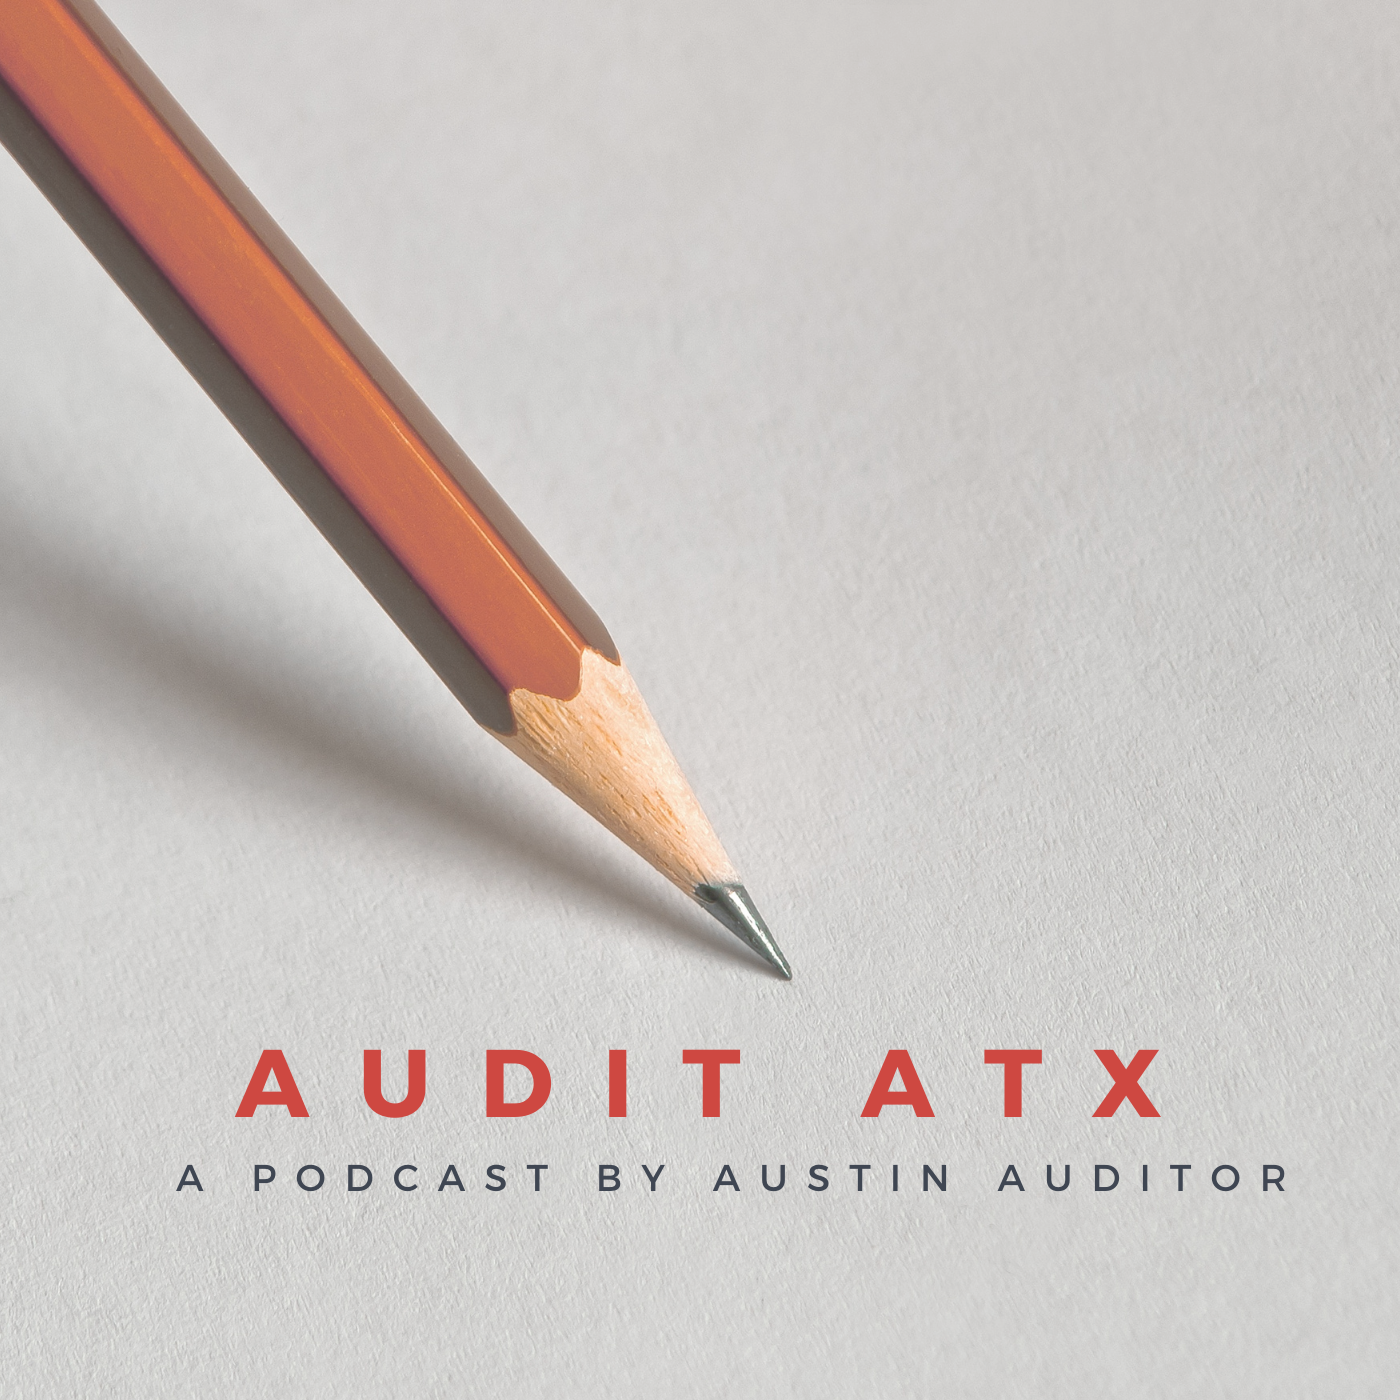 AuditATX podcast logo